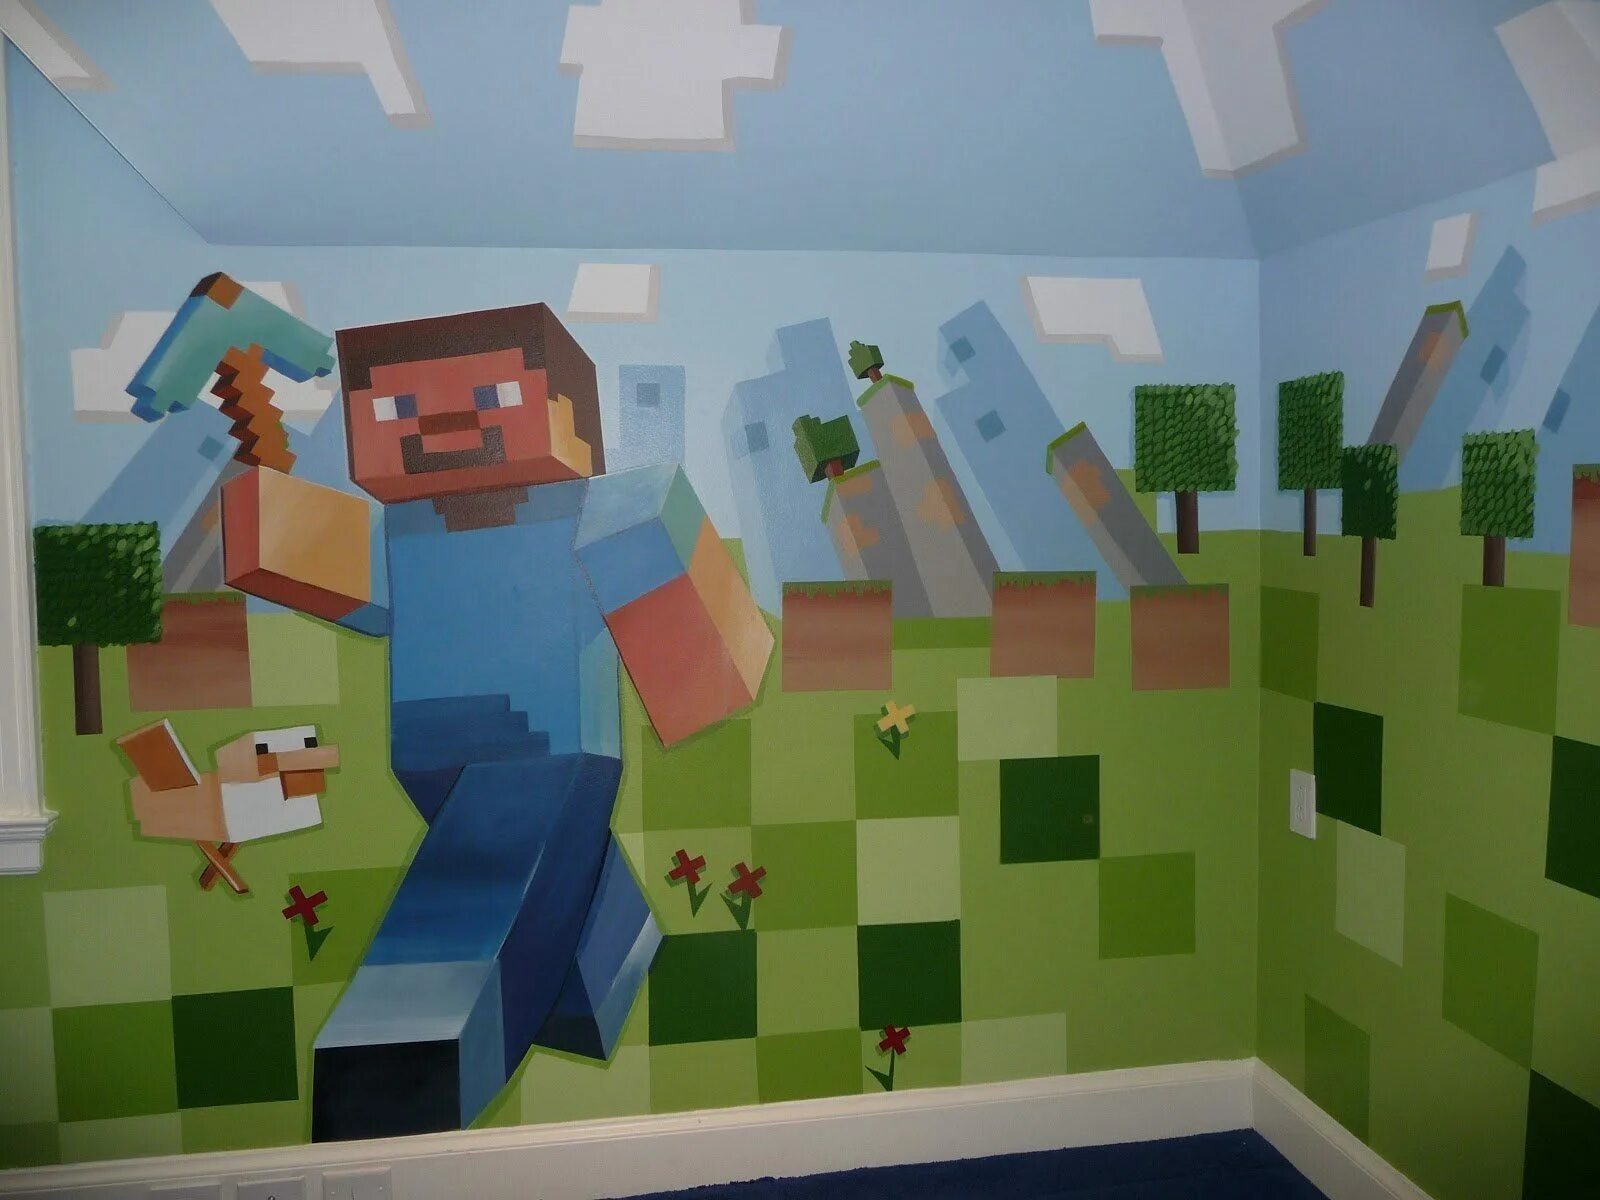 Майн детский. Украшения для комнаты в стиле МАЙНКРАФТА. Комната в стиле Minecraft. Интерьер в стиле майнкрафт. Декор комнаты в стиле МАЙНКРАФТА.